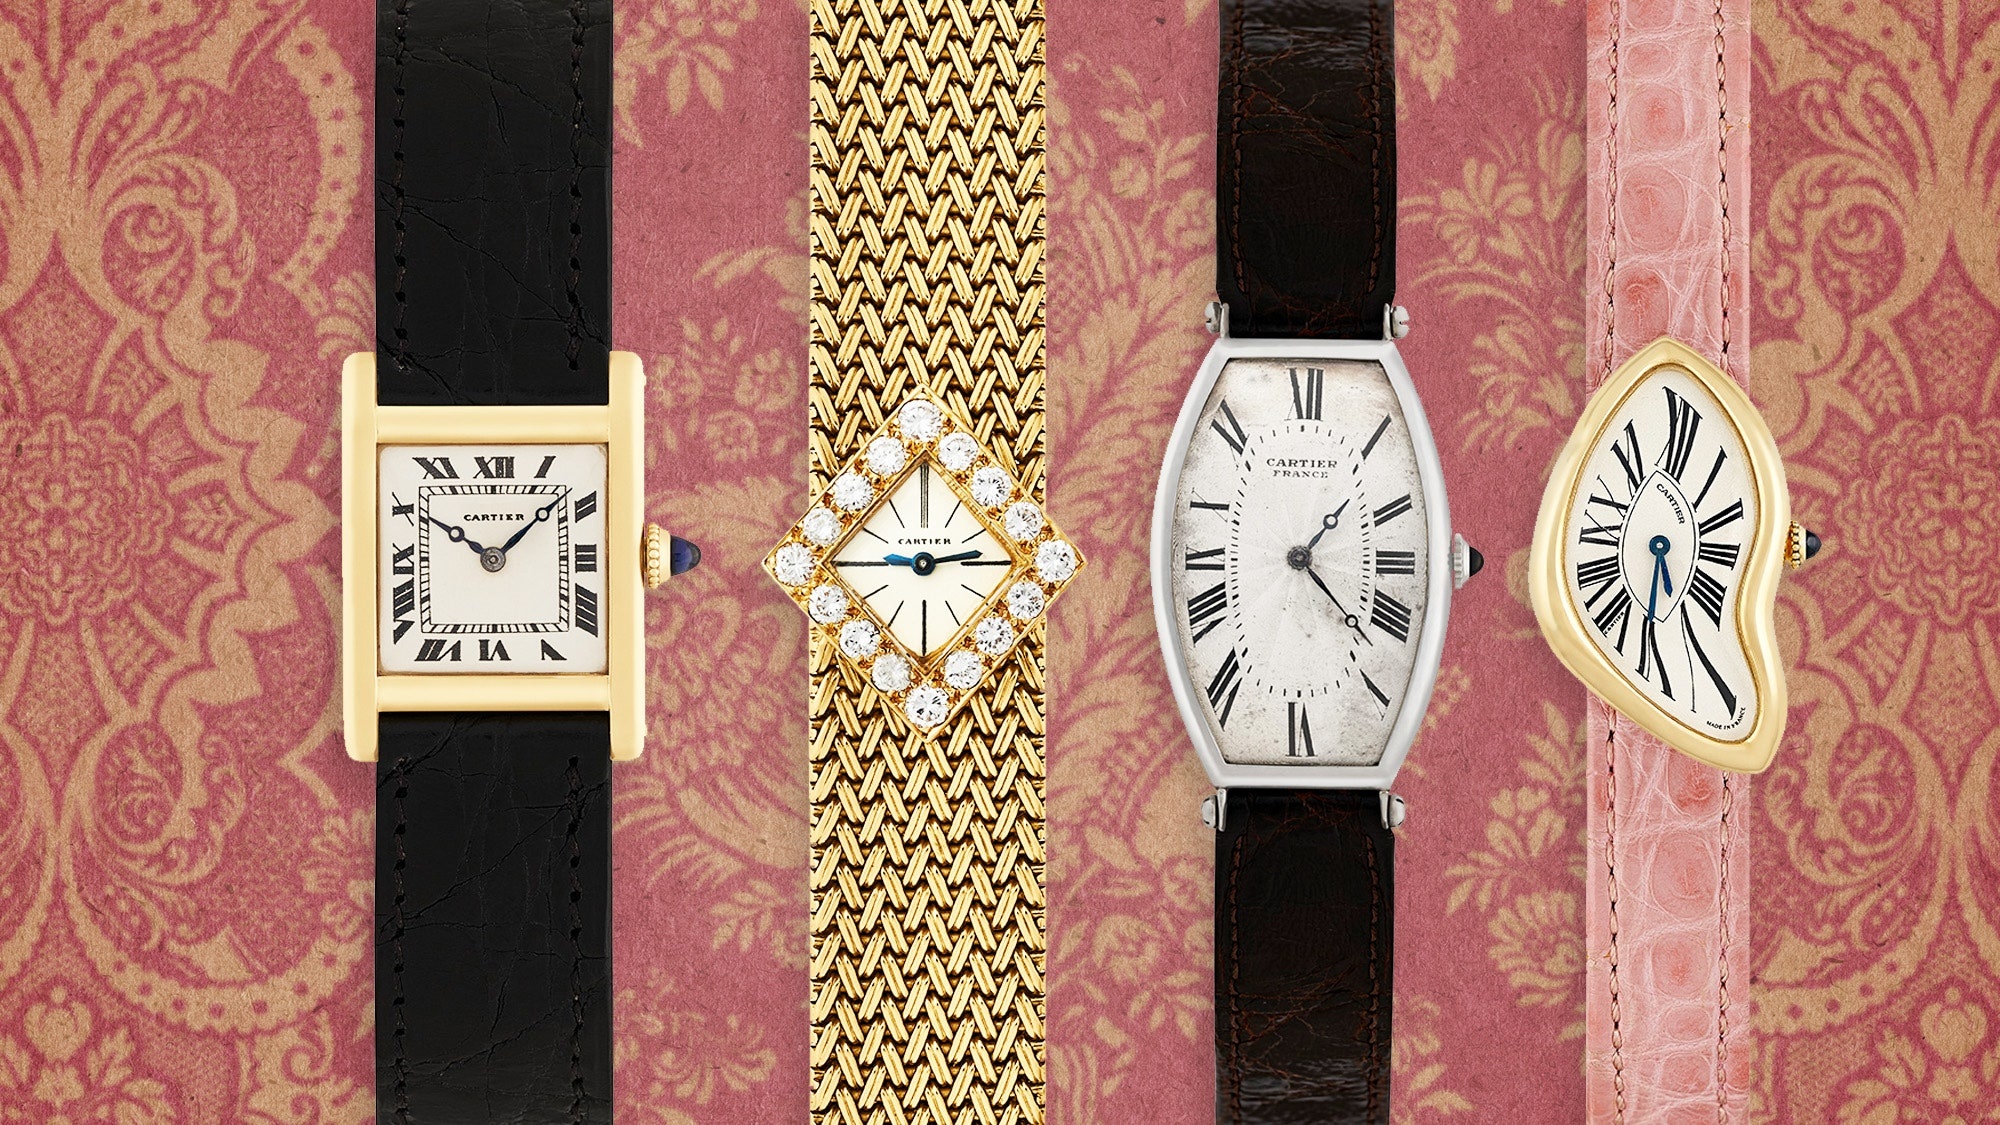 World's coolest watches, Cartier exhibition, GQ magazine, Luxury timepieces, 2000x1130 HD Desktop